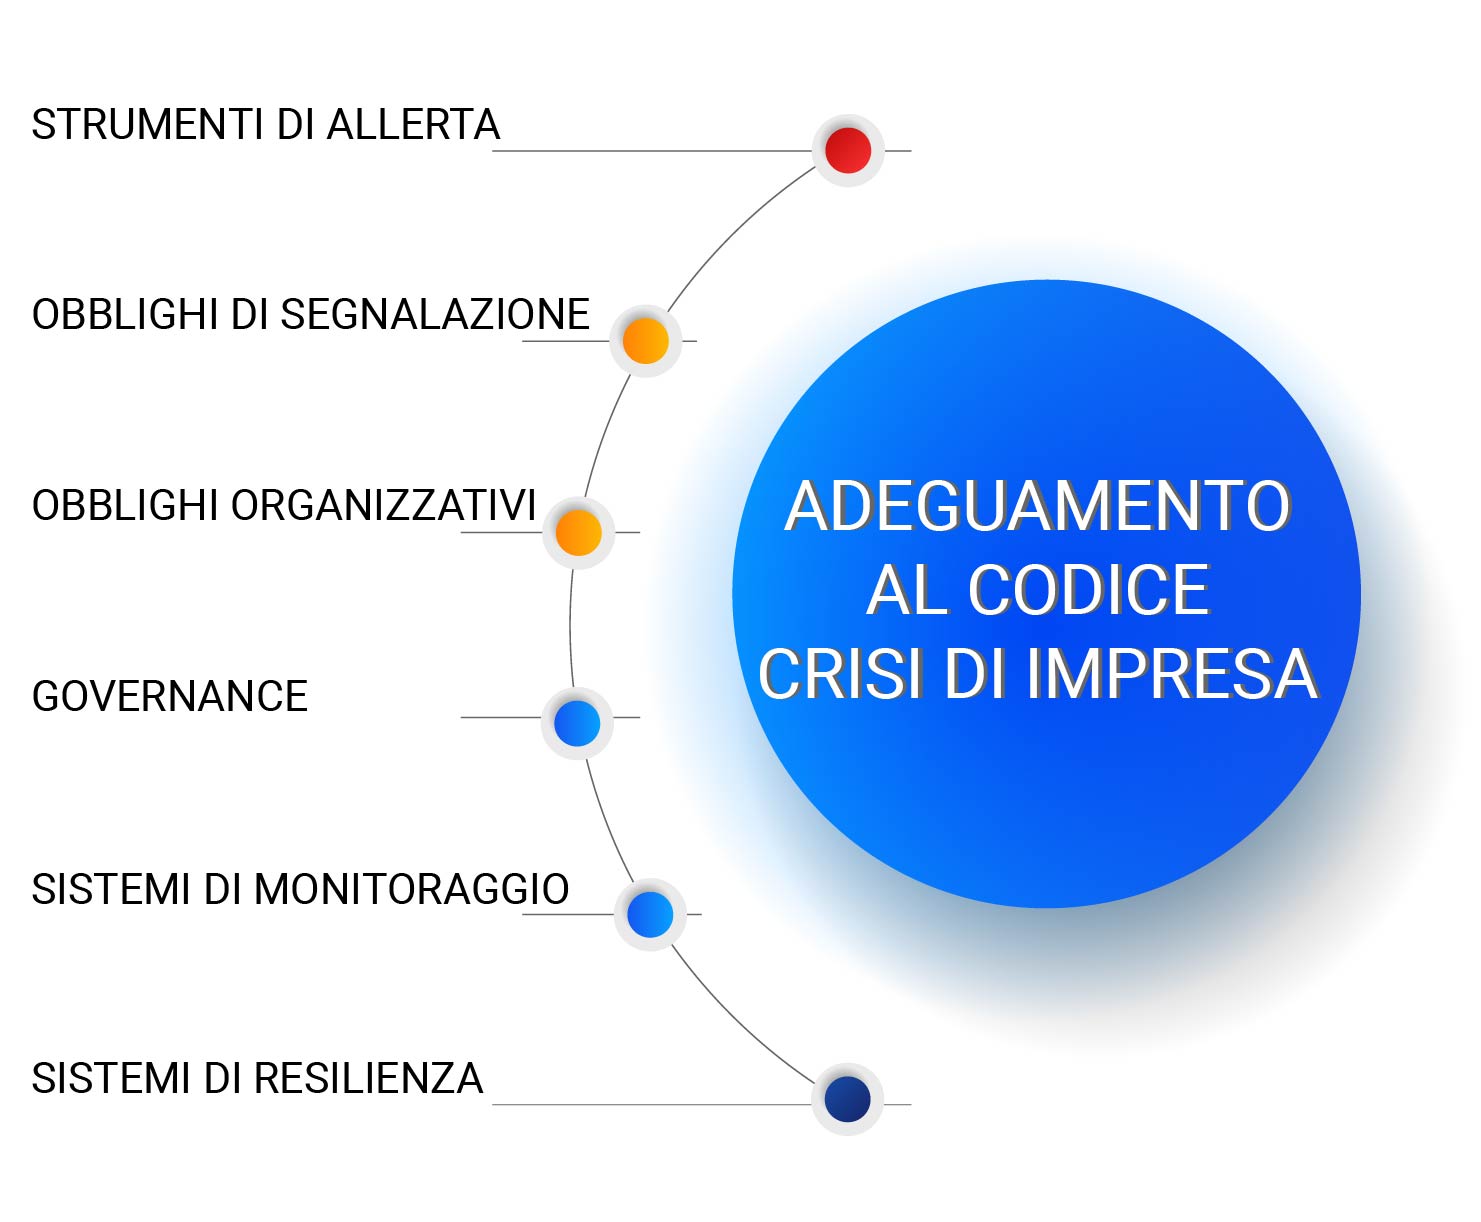 https://www.economiaprimaedopo.it/wp-content/uploads/2020/11/infografiche-economia-adeguamento-codice-crisi-impresa.jpg